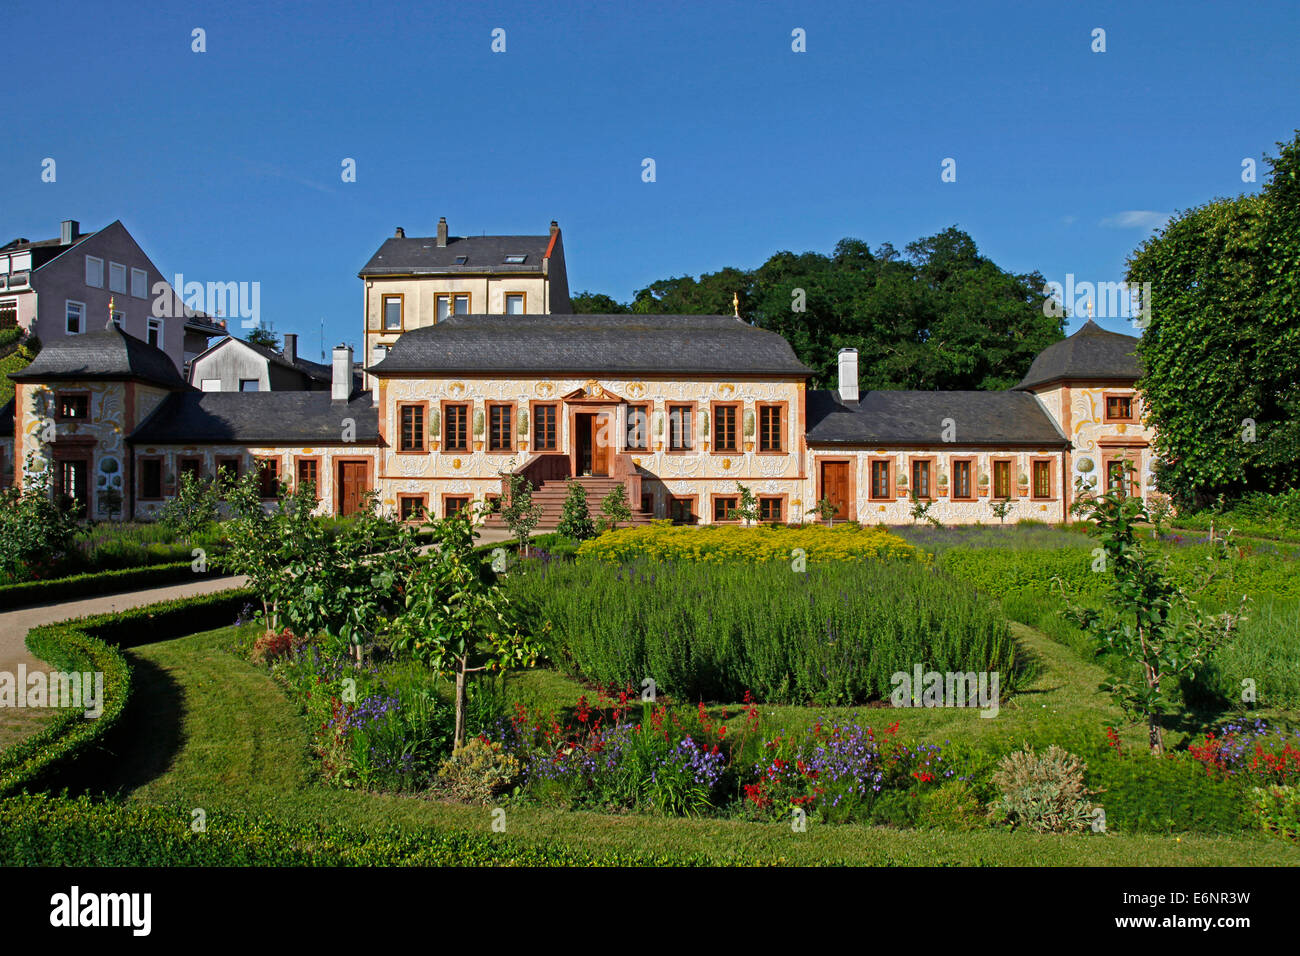 Le Prince George s jardin et Pretlack'sches maison d'été, Darmstadt, Hesse, Allemagne, le Prince George's garden dans sa couverture actuelle existe depuis 1765. Il était à l'origine dans la possession du Lieutenant-général Johann Rudolf von Pretlack, un gendre o Banque D'Images